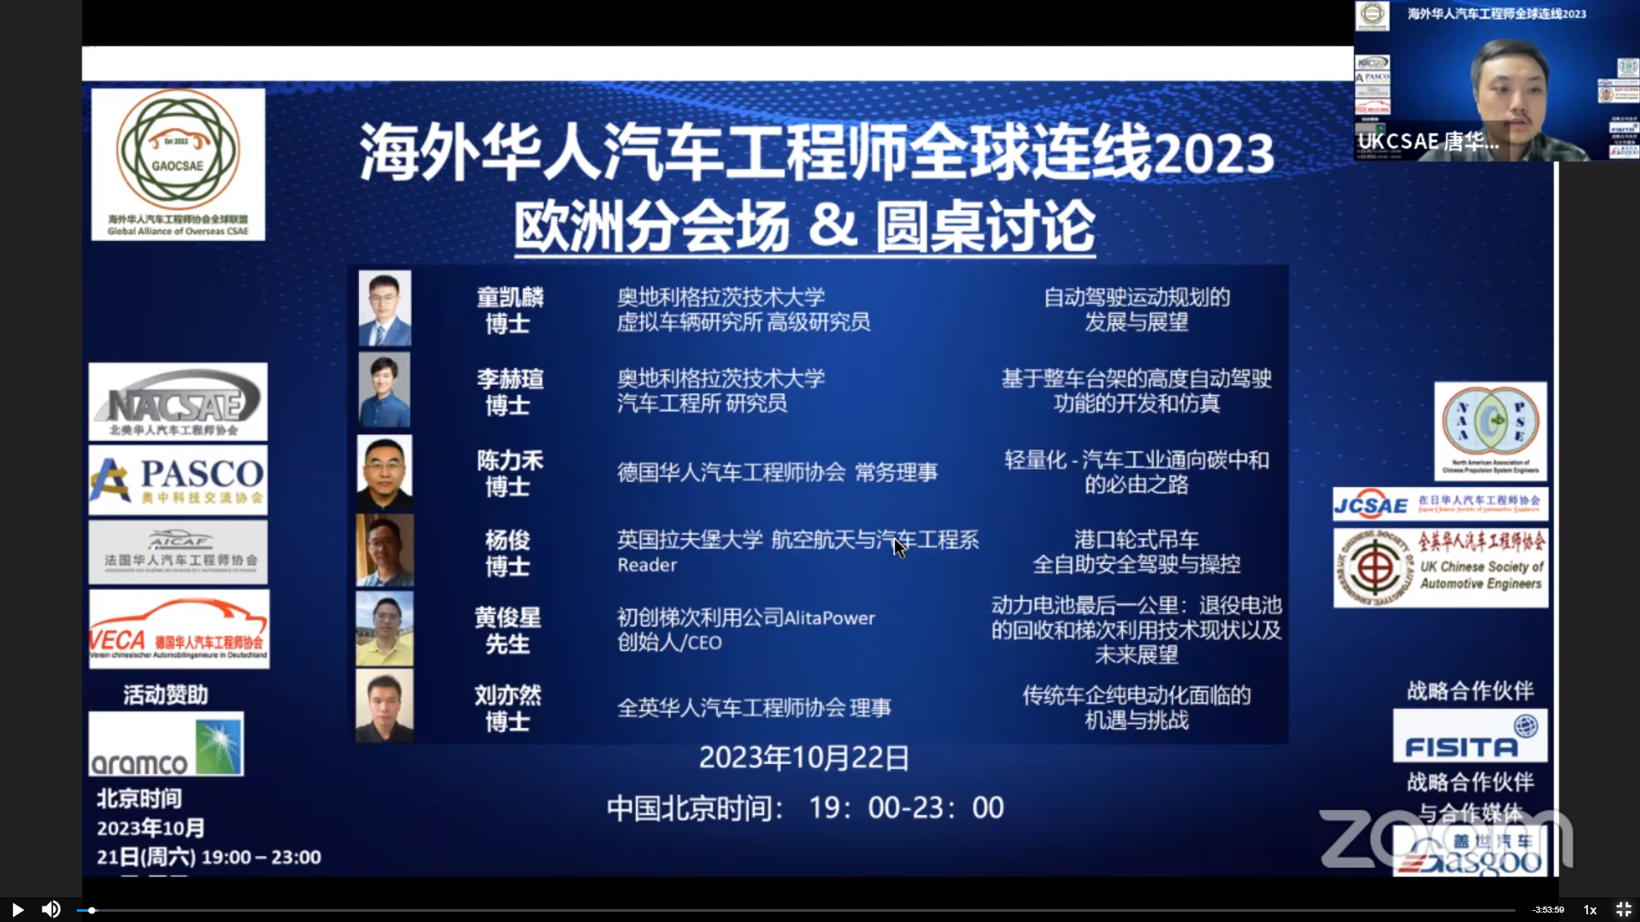 “海外华人汽车工程师全球连线2023” 盛大开幕